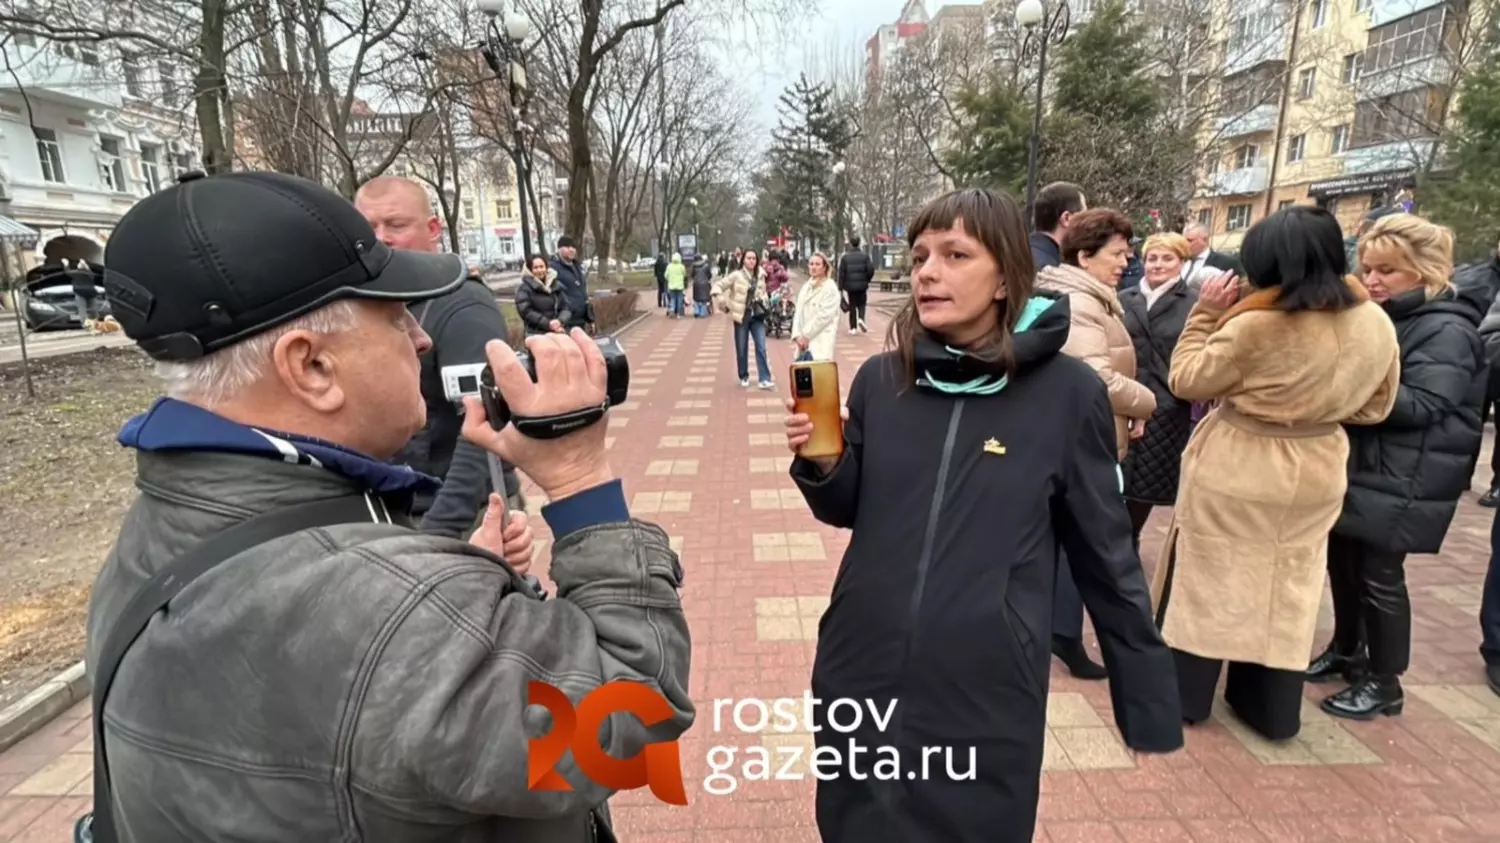 Активистка, выступившая против установки памятника Жванецкому в Ростове